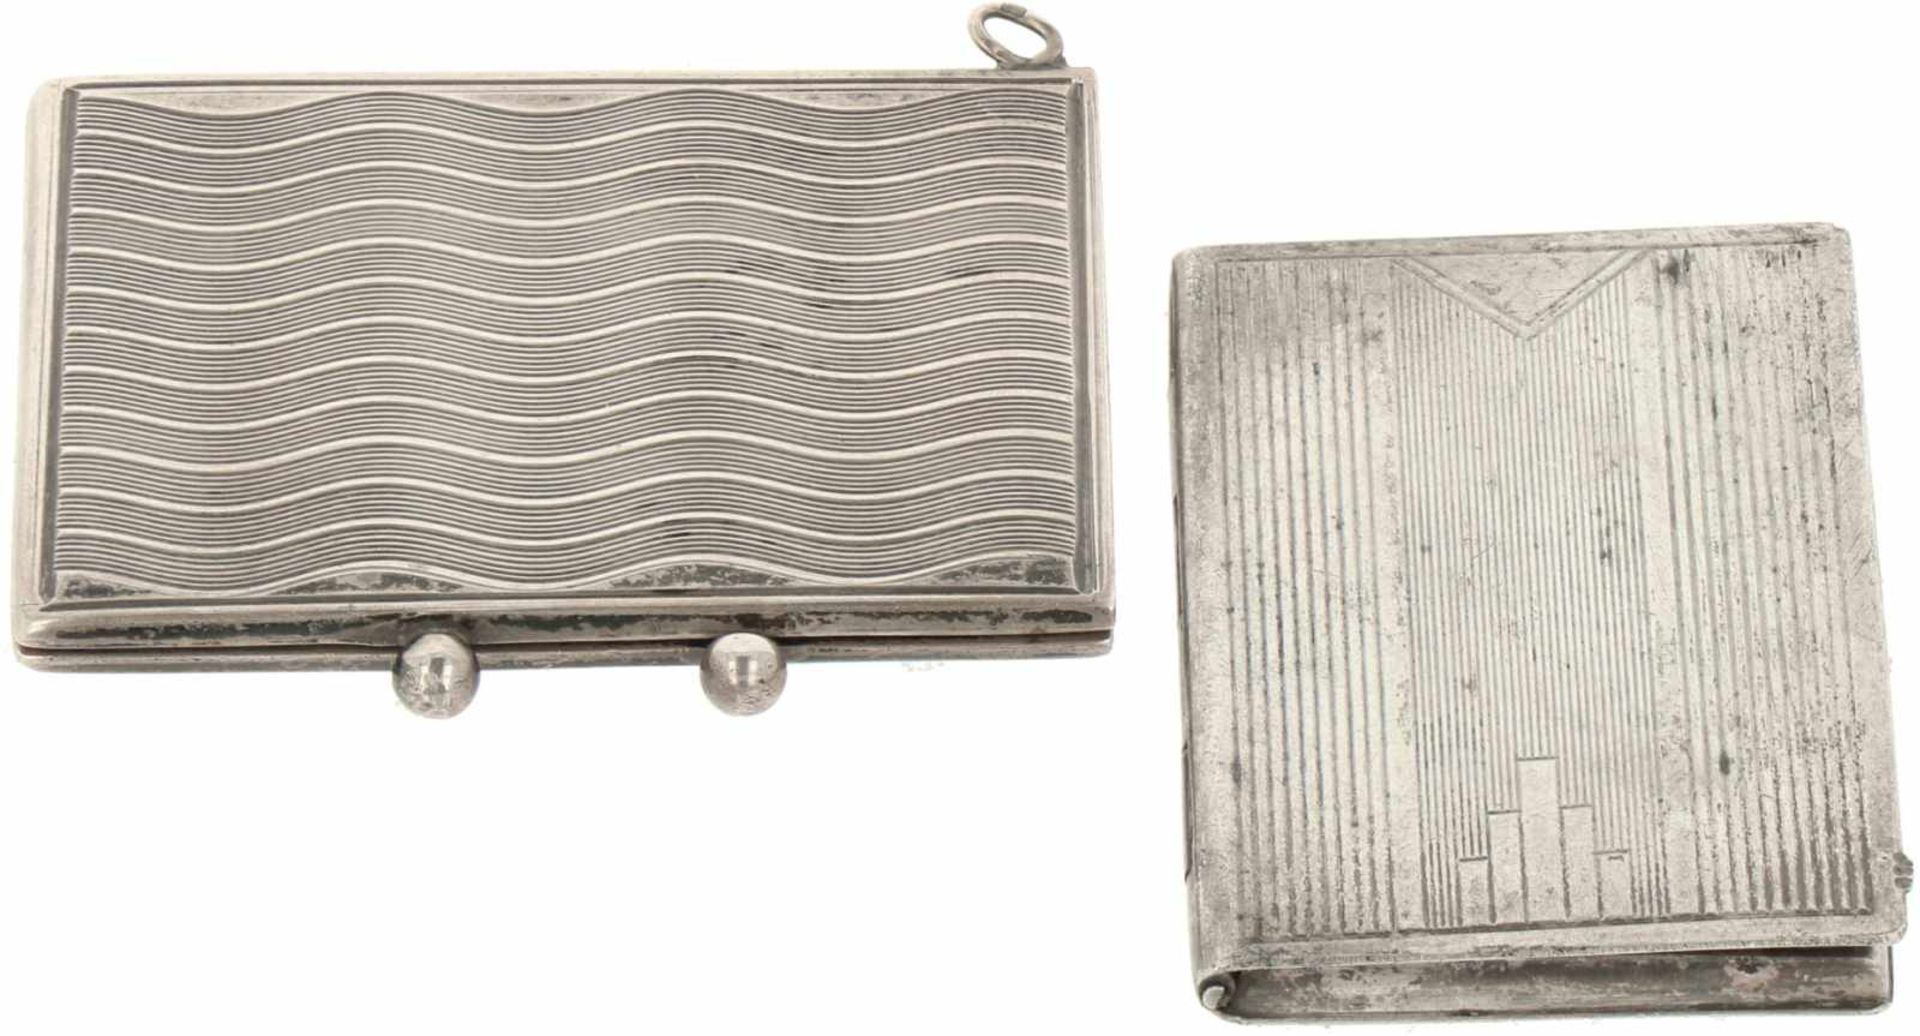 Foto etui & Postzegel etui zilver.Beiden voorzien van gegraveerde guilloche versieringen. Duitsland,